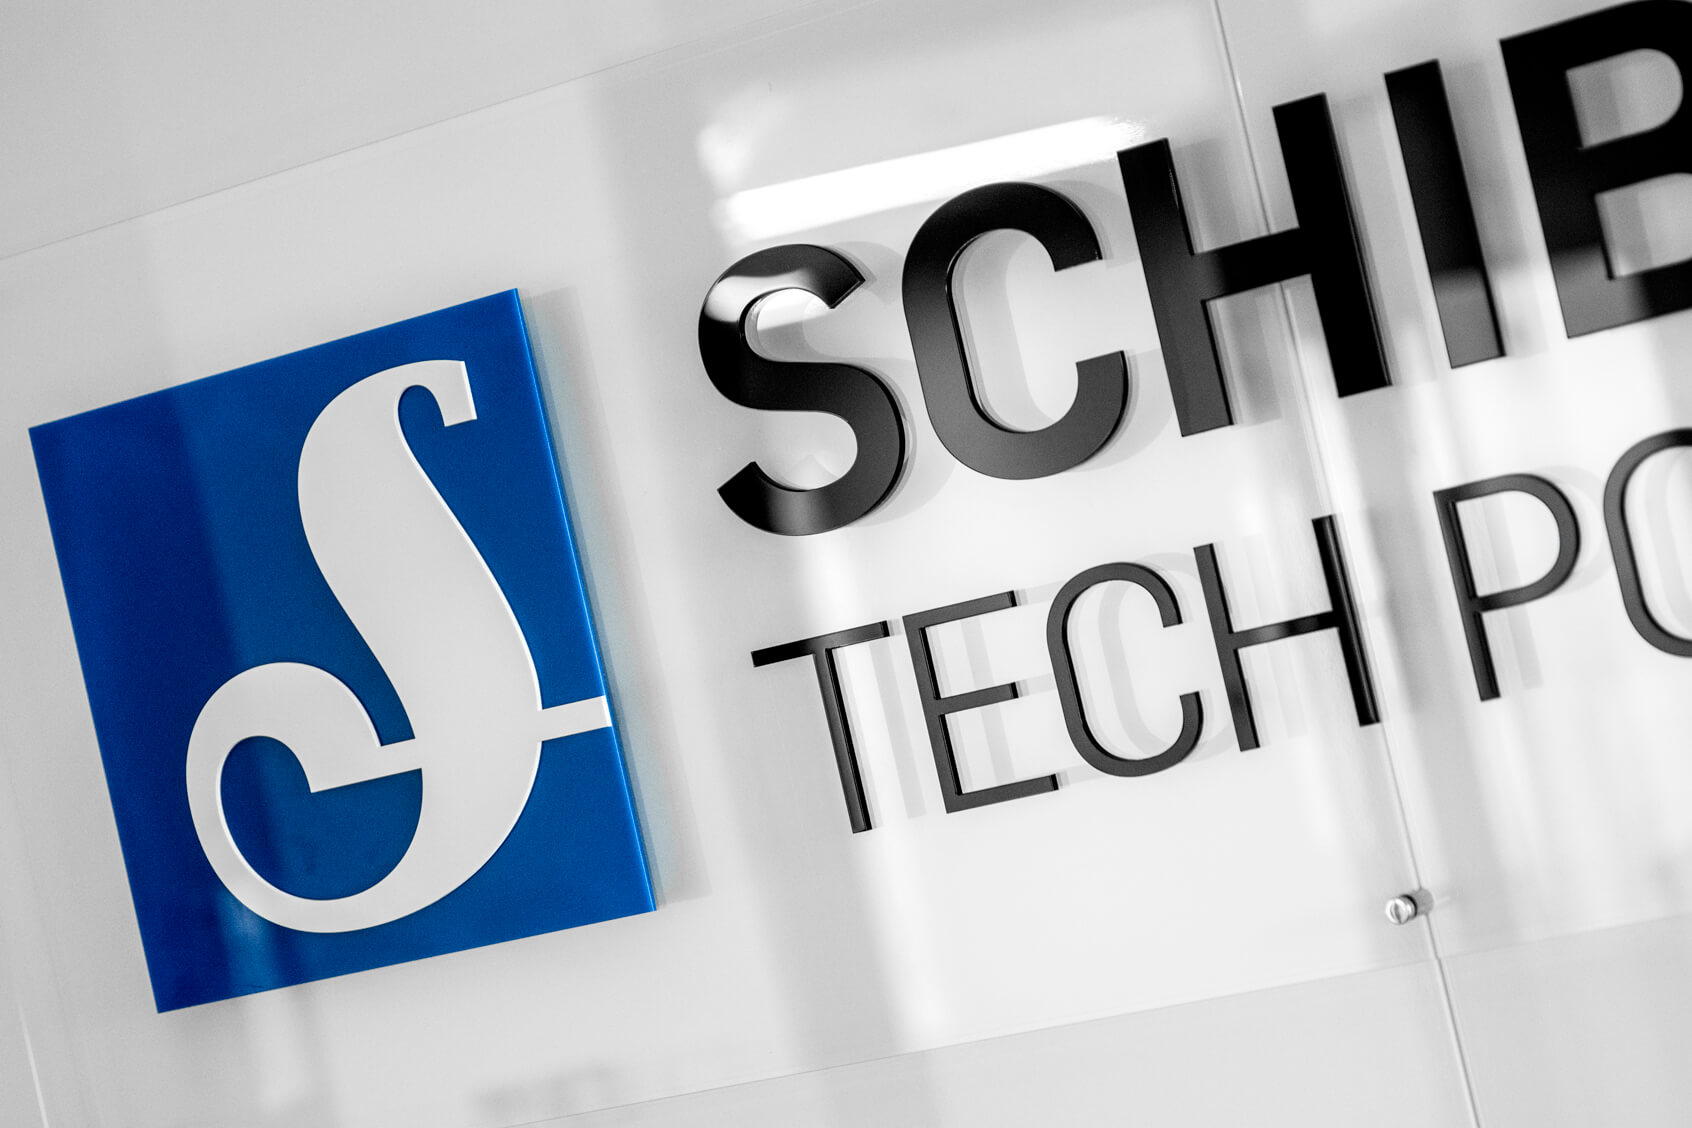 Shibsted Tech Polska - Schibsted Tech Polska - logo i litery przestrzenne 3D na podstawie plexi na dystansach w recepcji